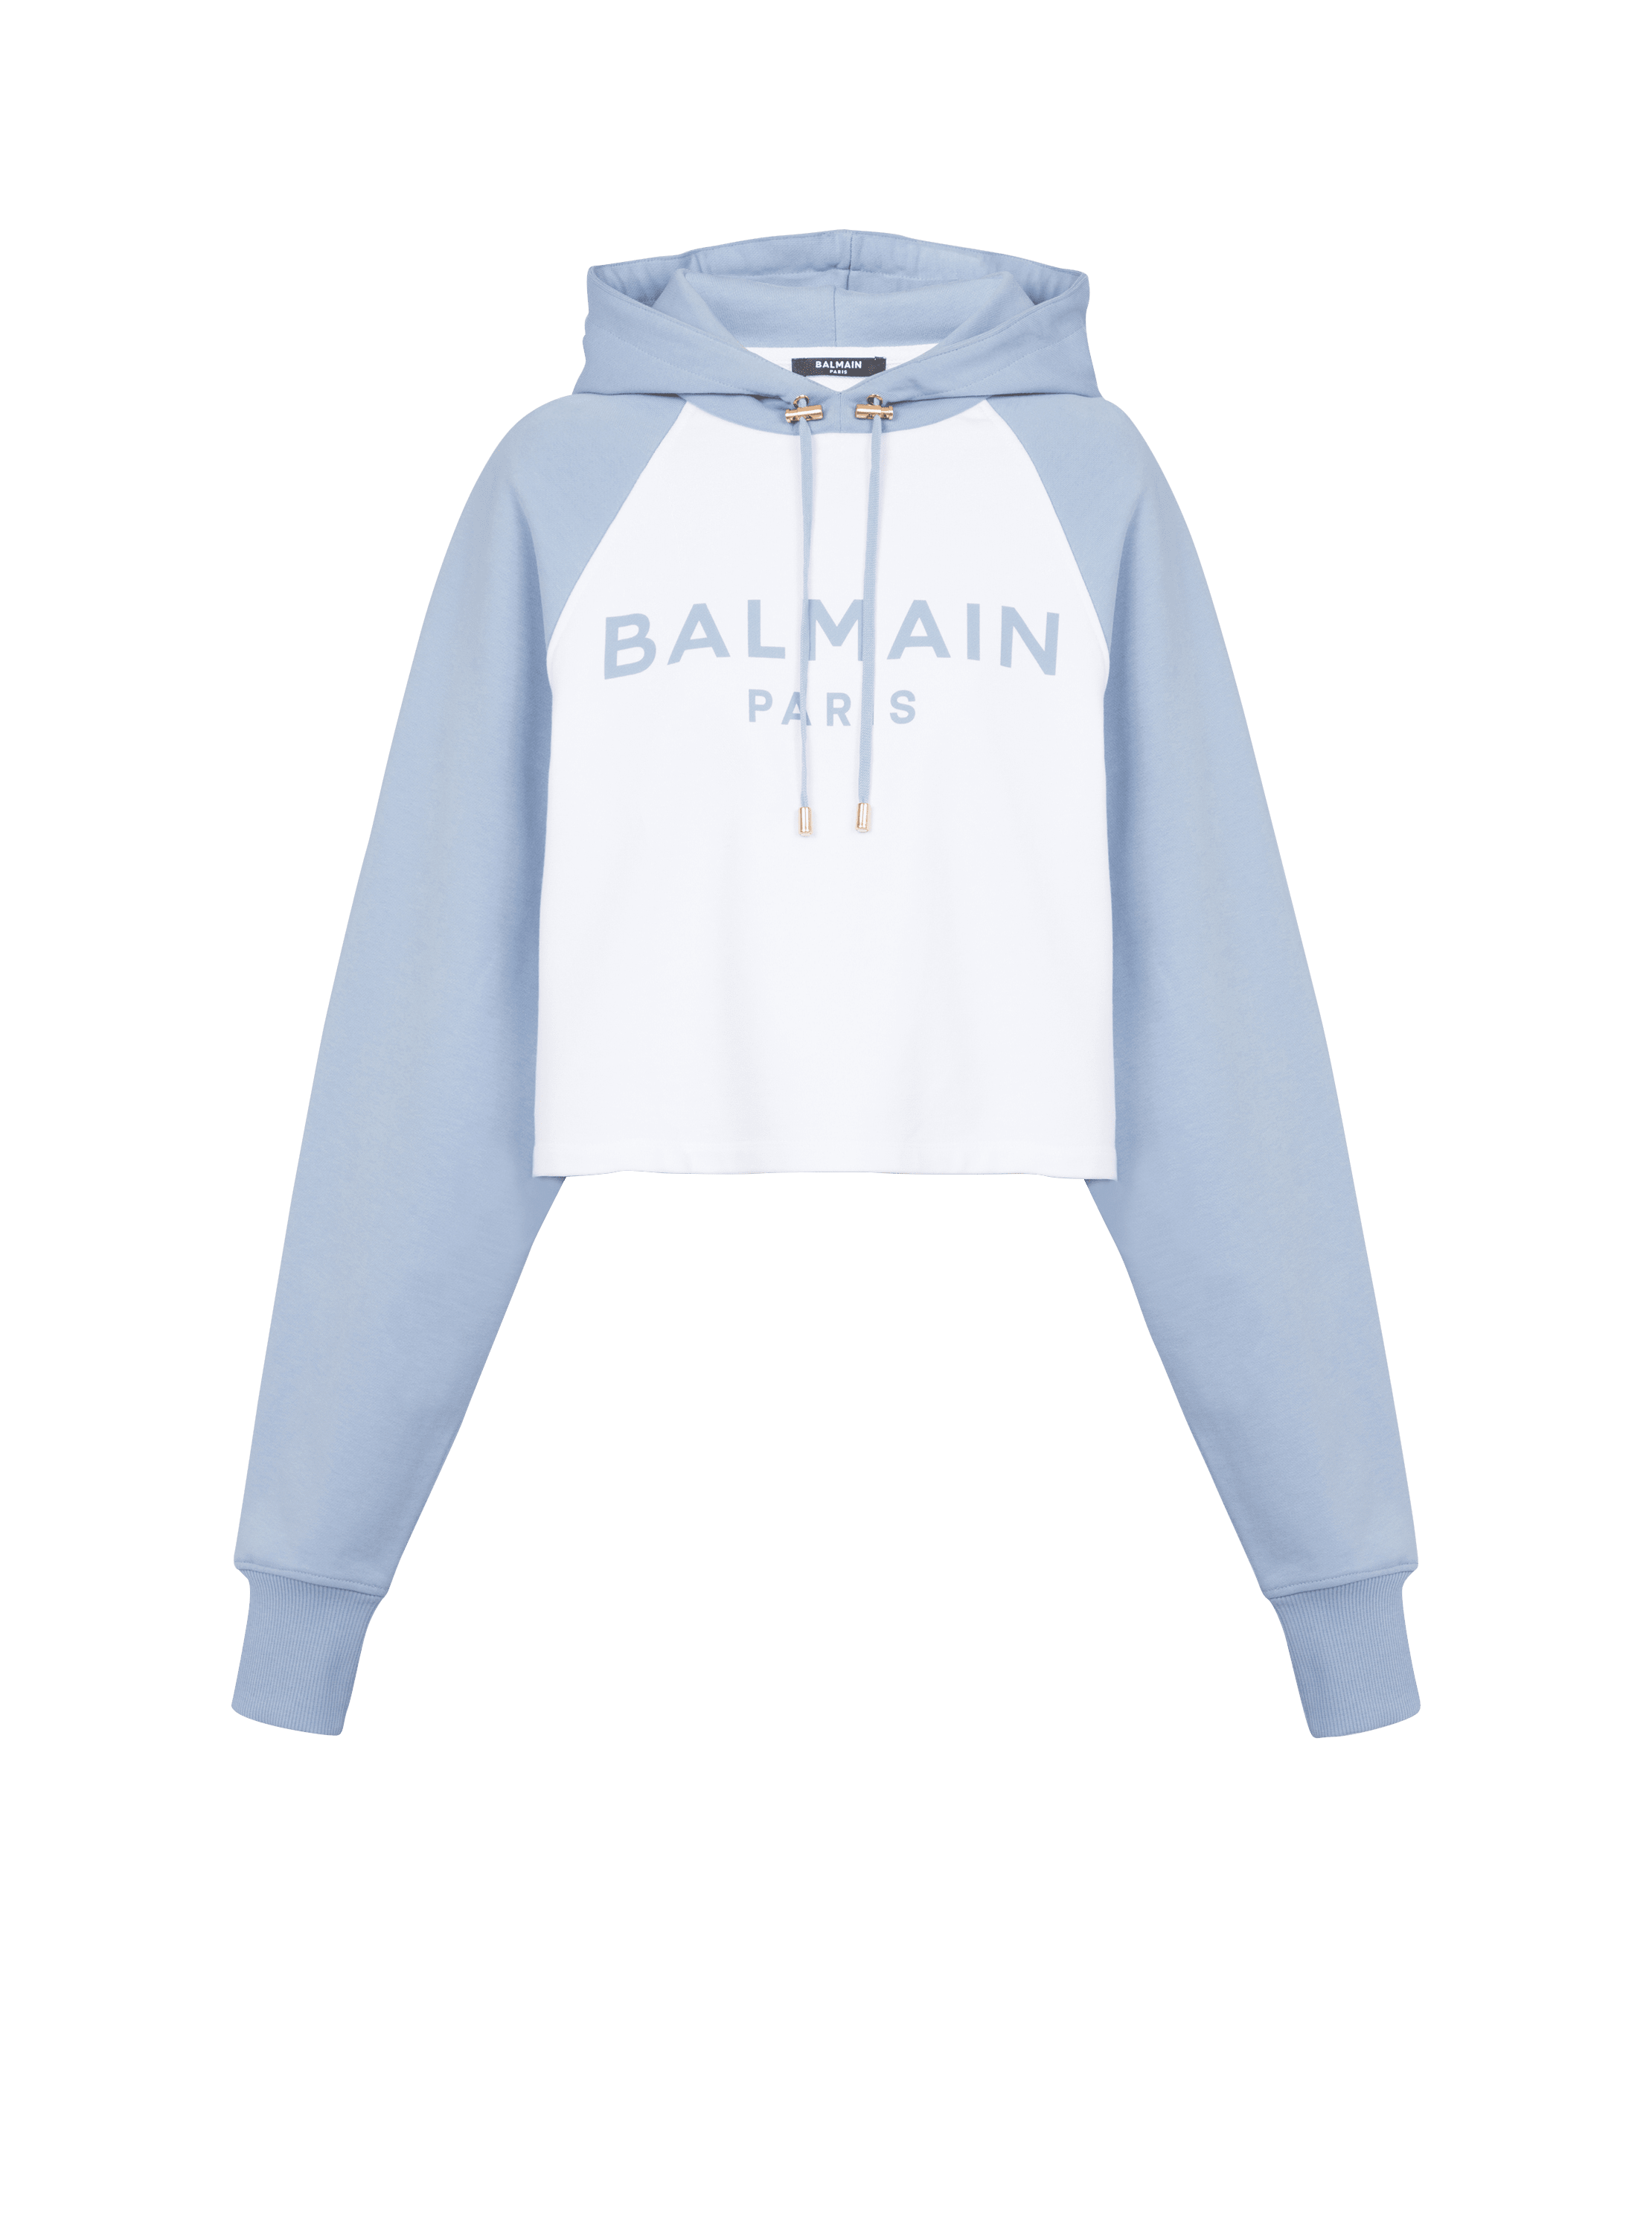 Balmain Paris hoodie, blue, hi-res